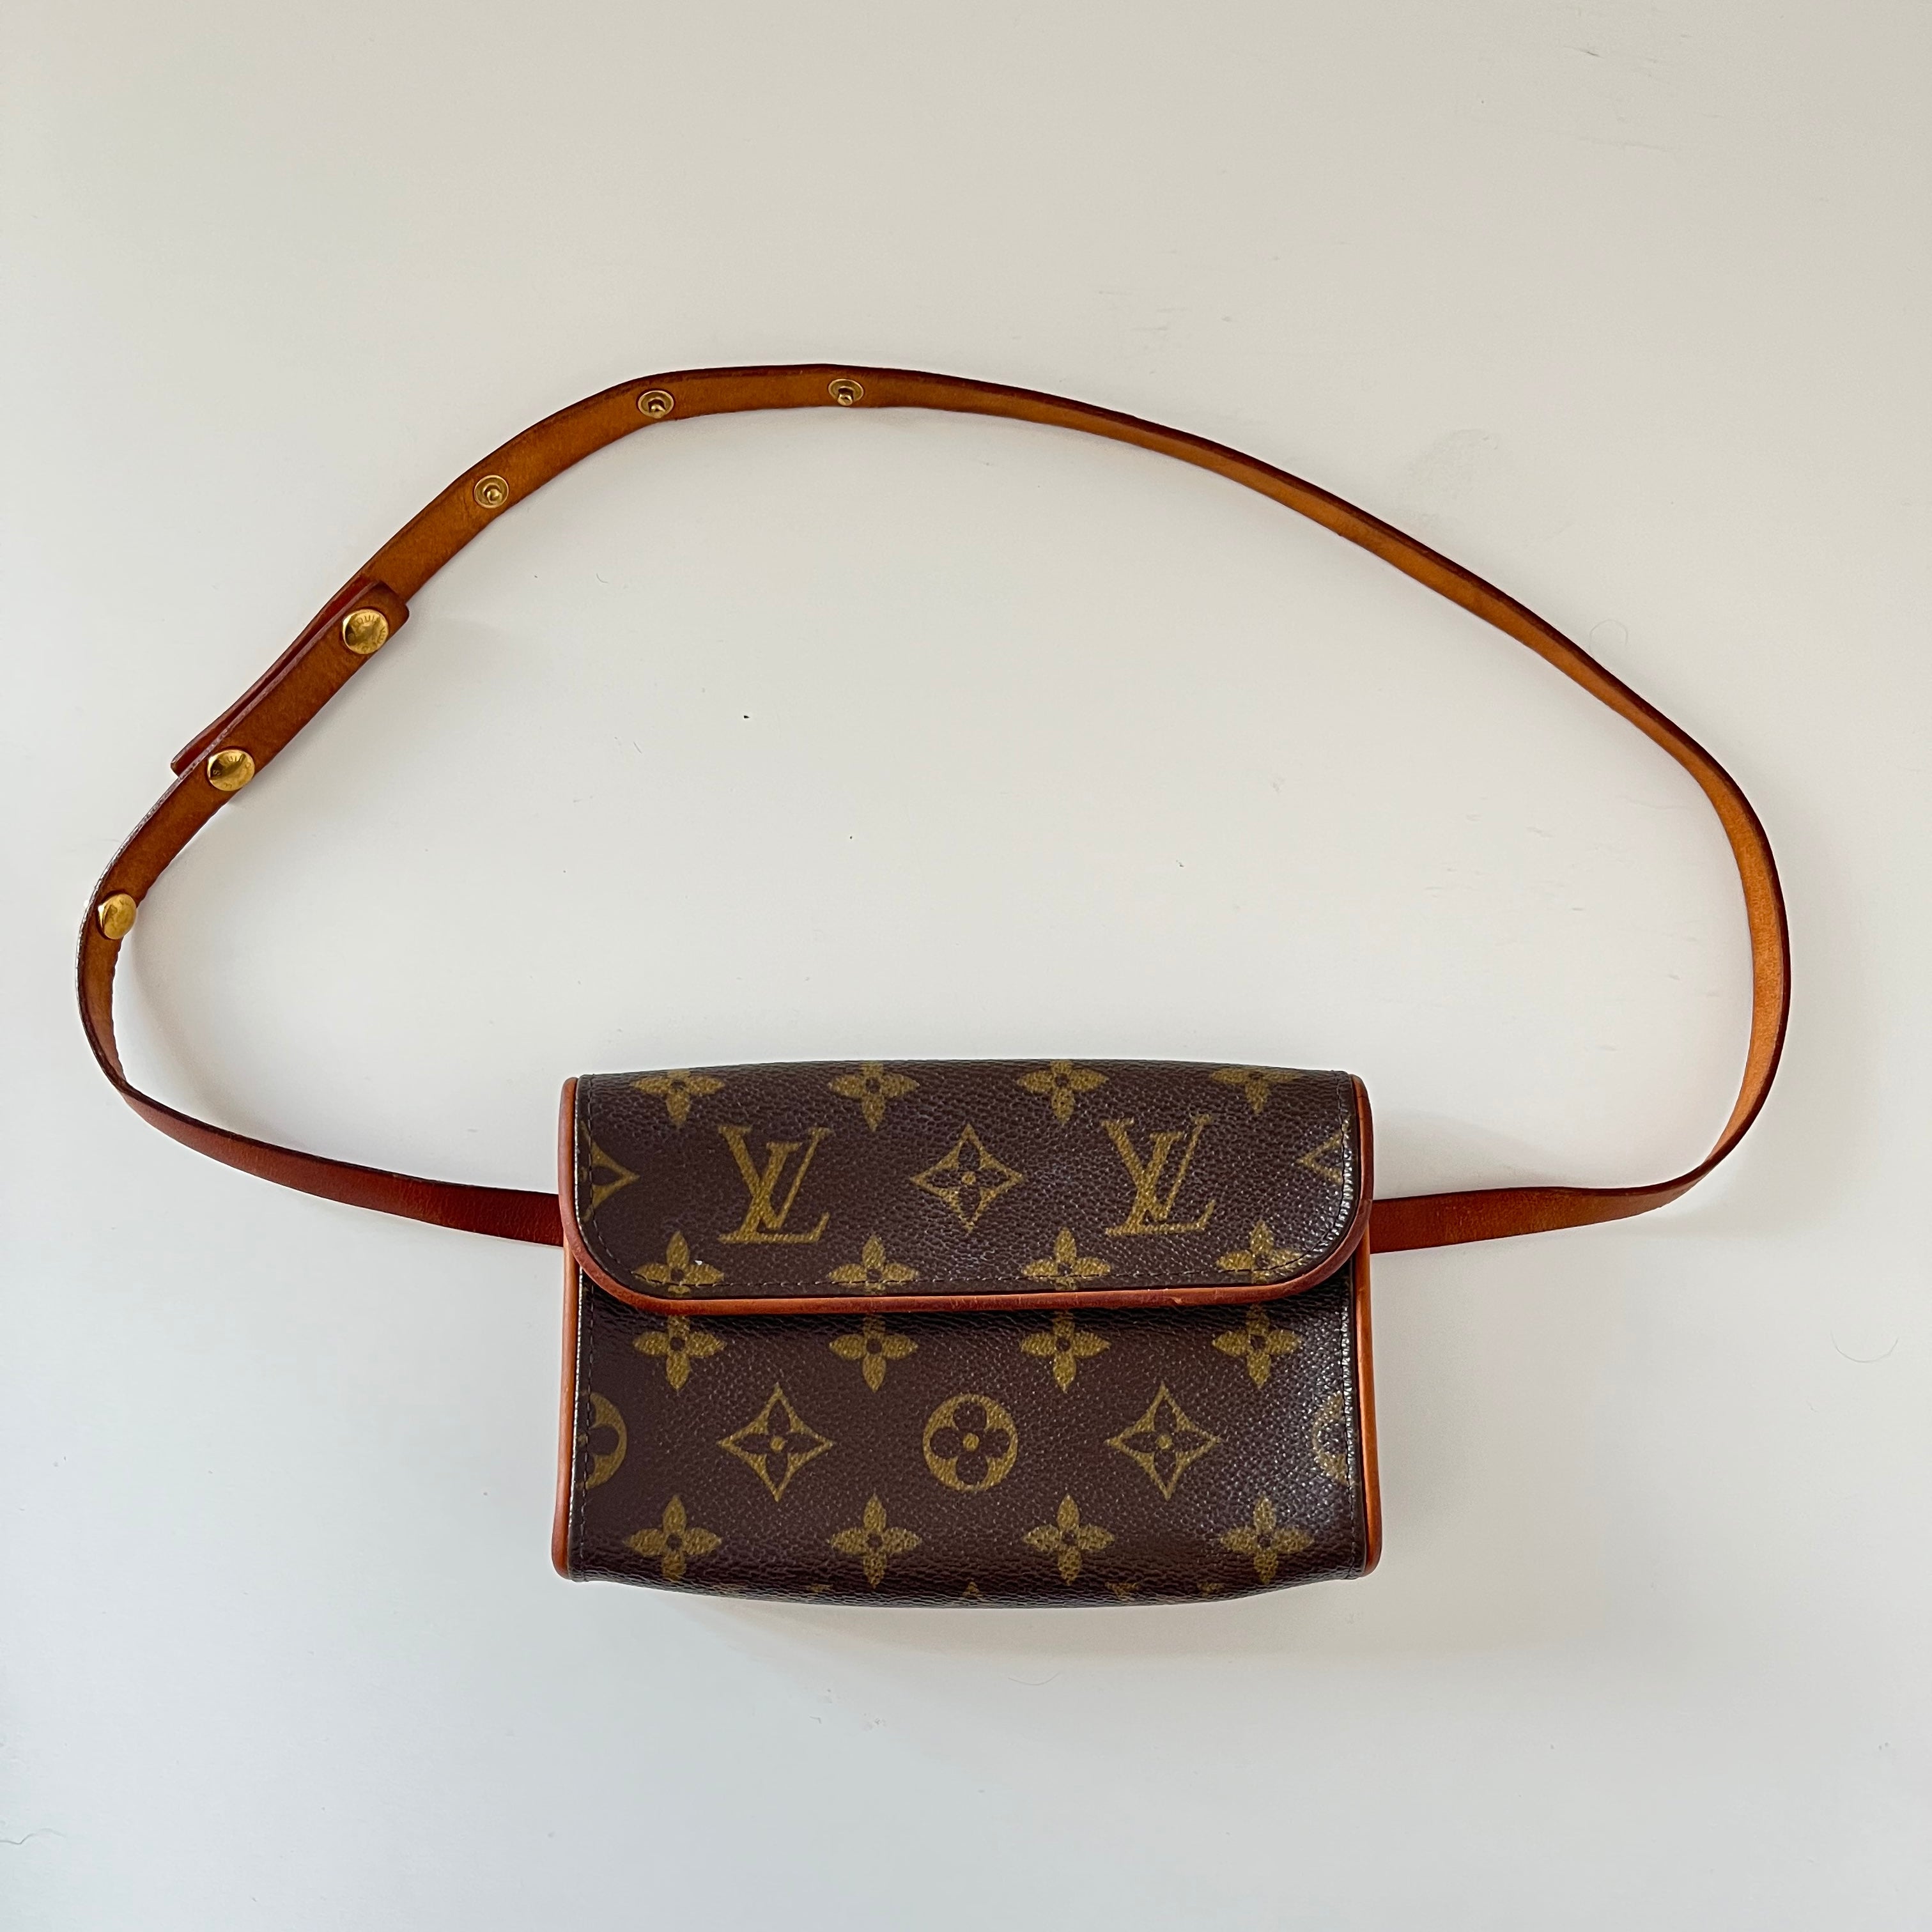 ITEM 19 - Louis Vuitton Florentine Belt Bag Pouch Monogram - THE